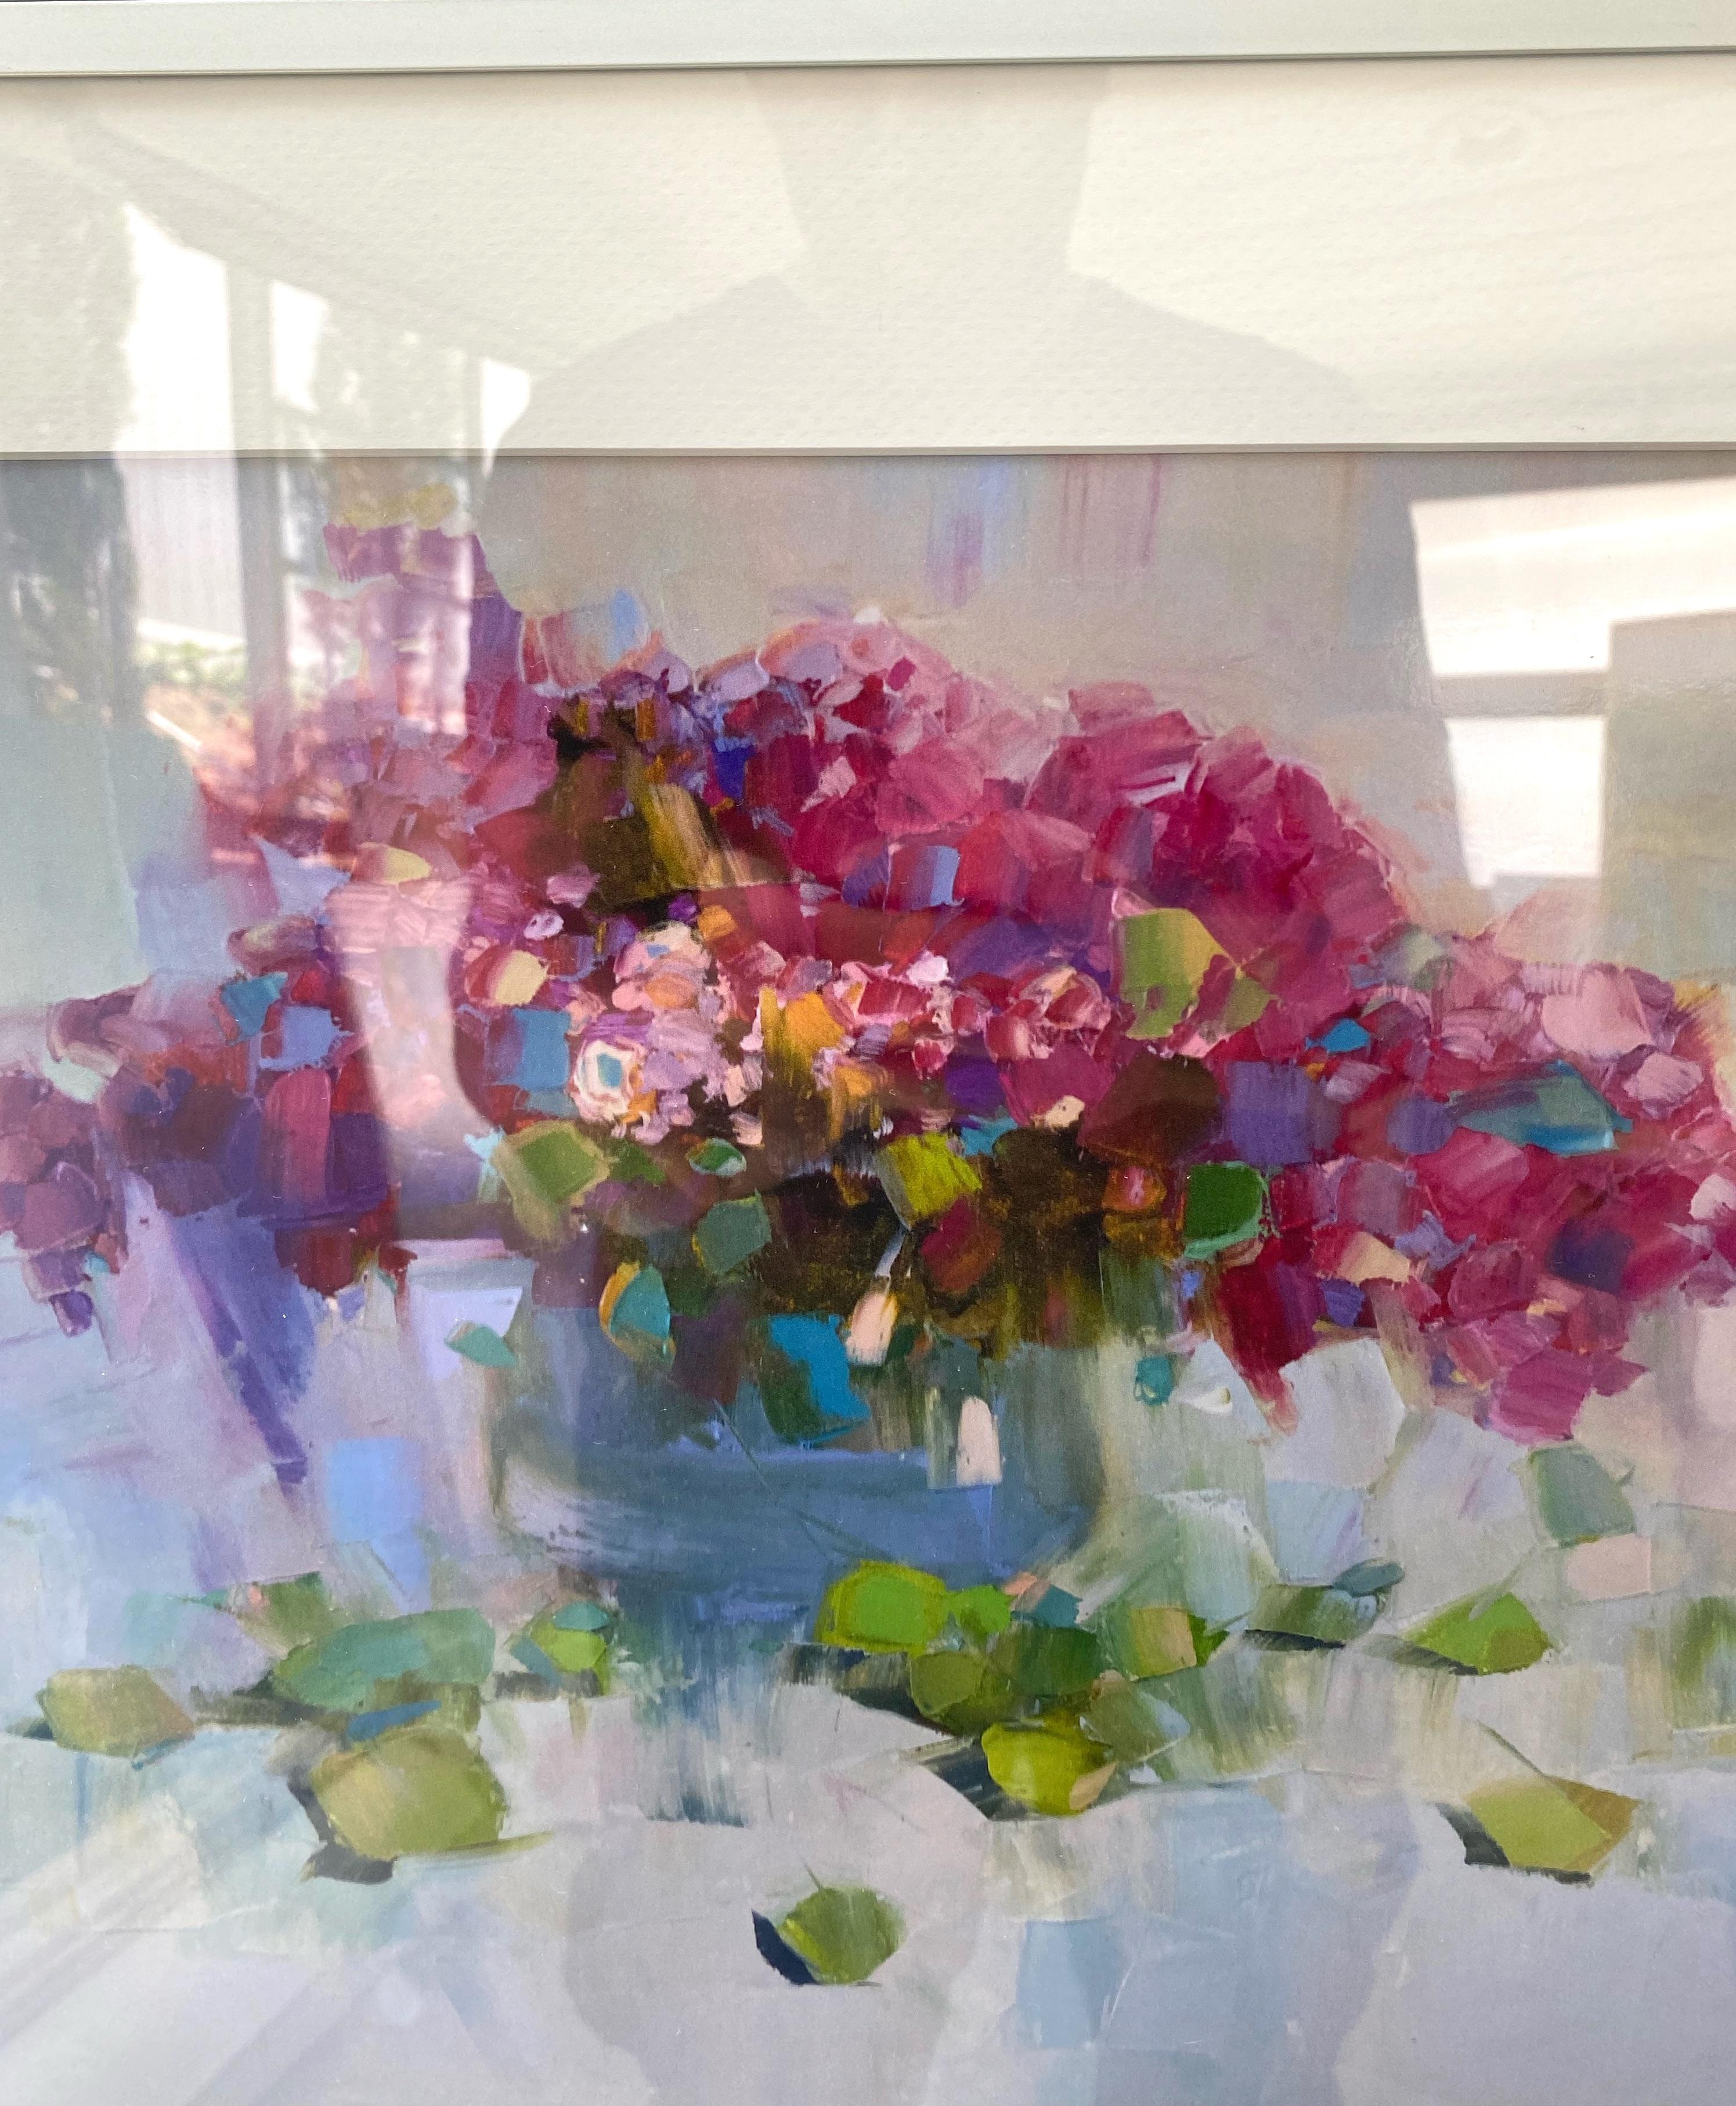 Artist: Vahe Yeremyan
Work: Print on Paper,
Subject: Vase of Flowers, 
Framed Size: 1.5